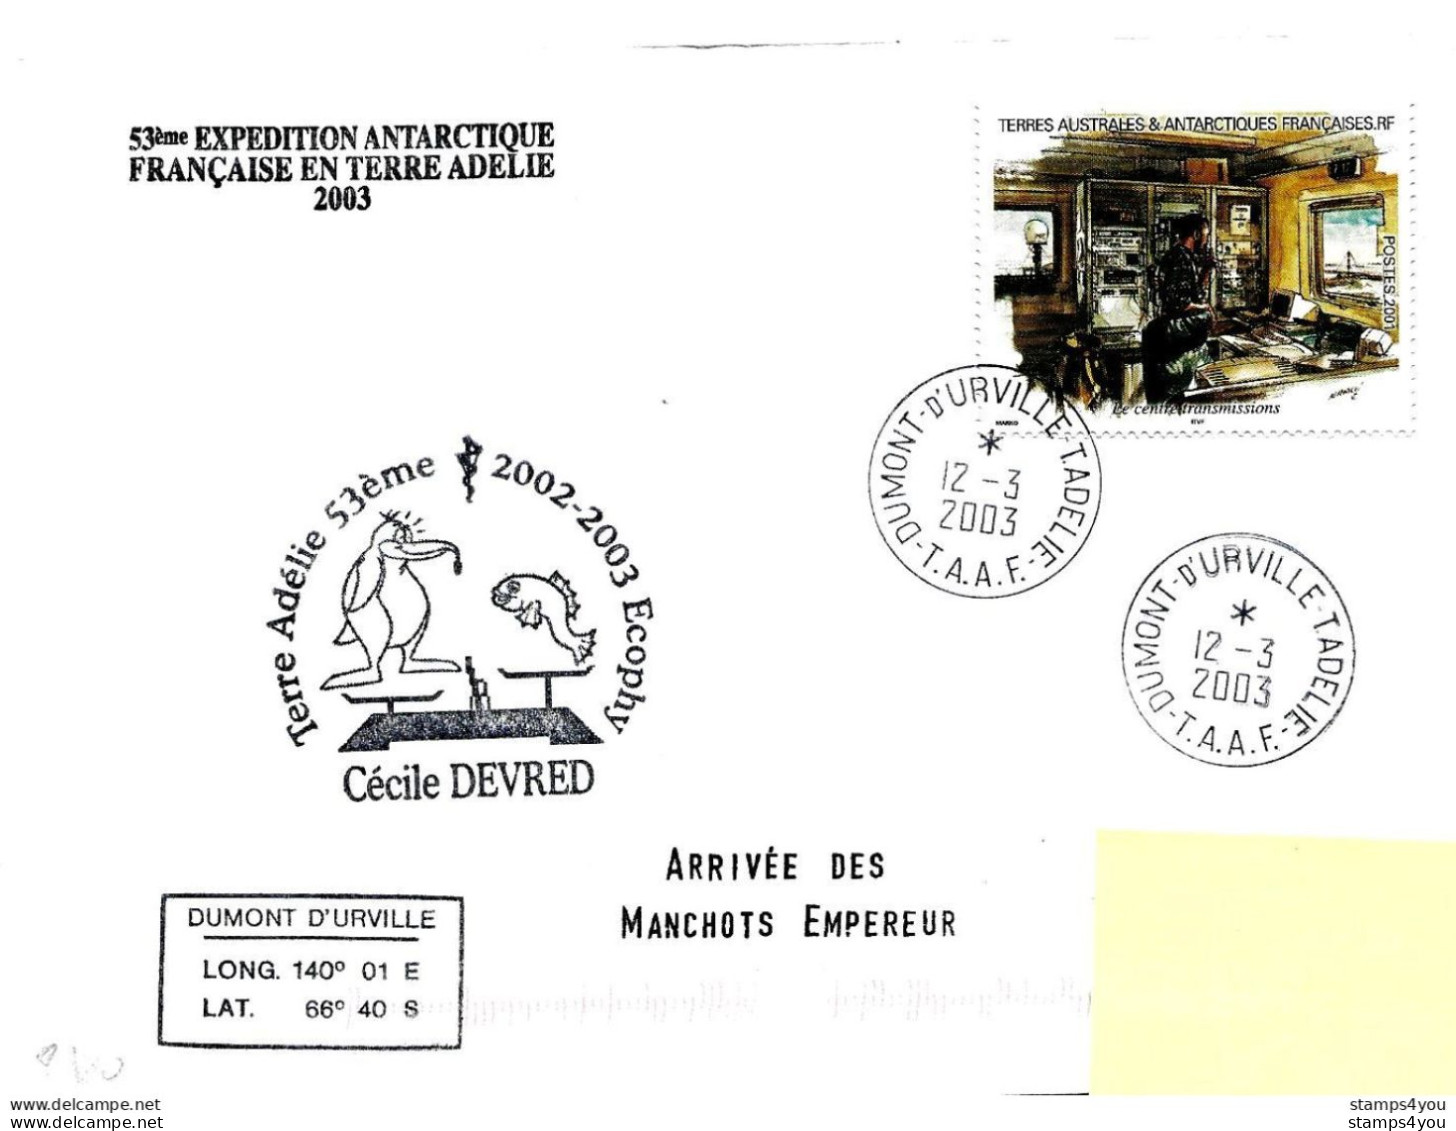 229 - 16 - Enveloppe TAAF Terre Adélie "arrivée Manchots 2003" - Timbre Tiré Carnet De Voyage - Onderzoeksstations